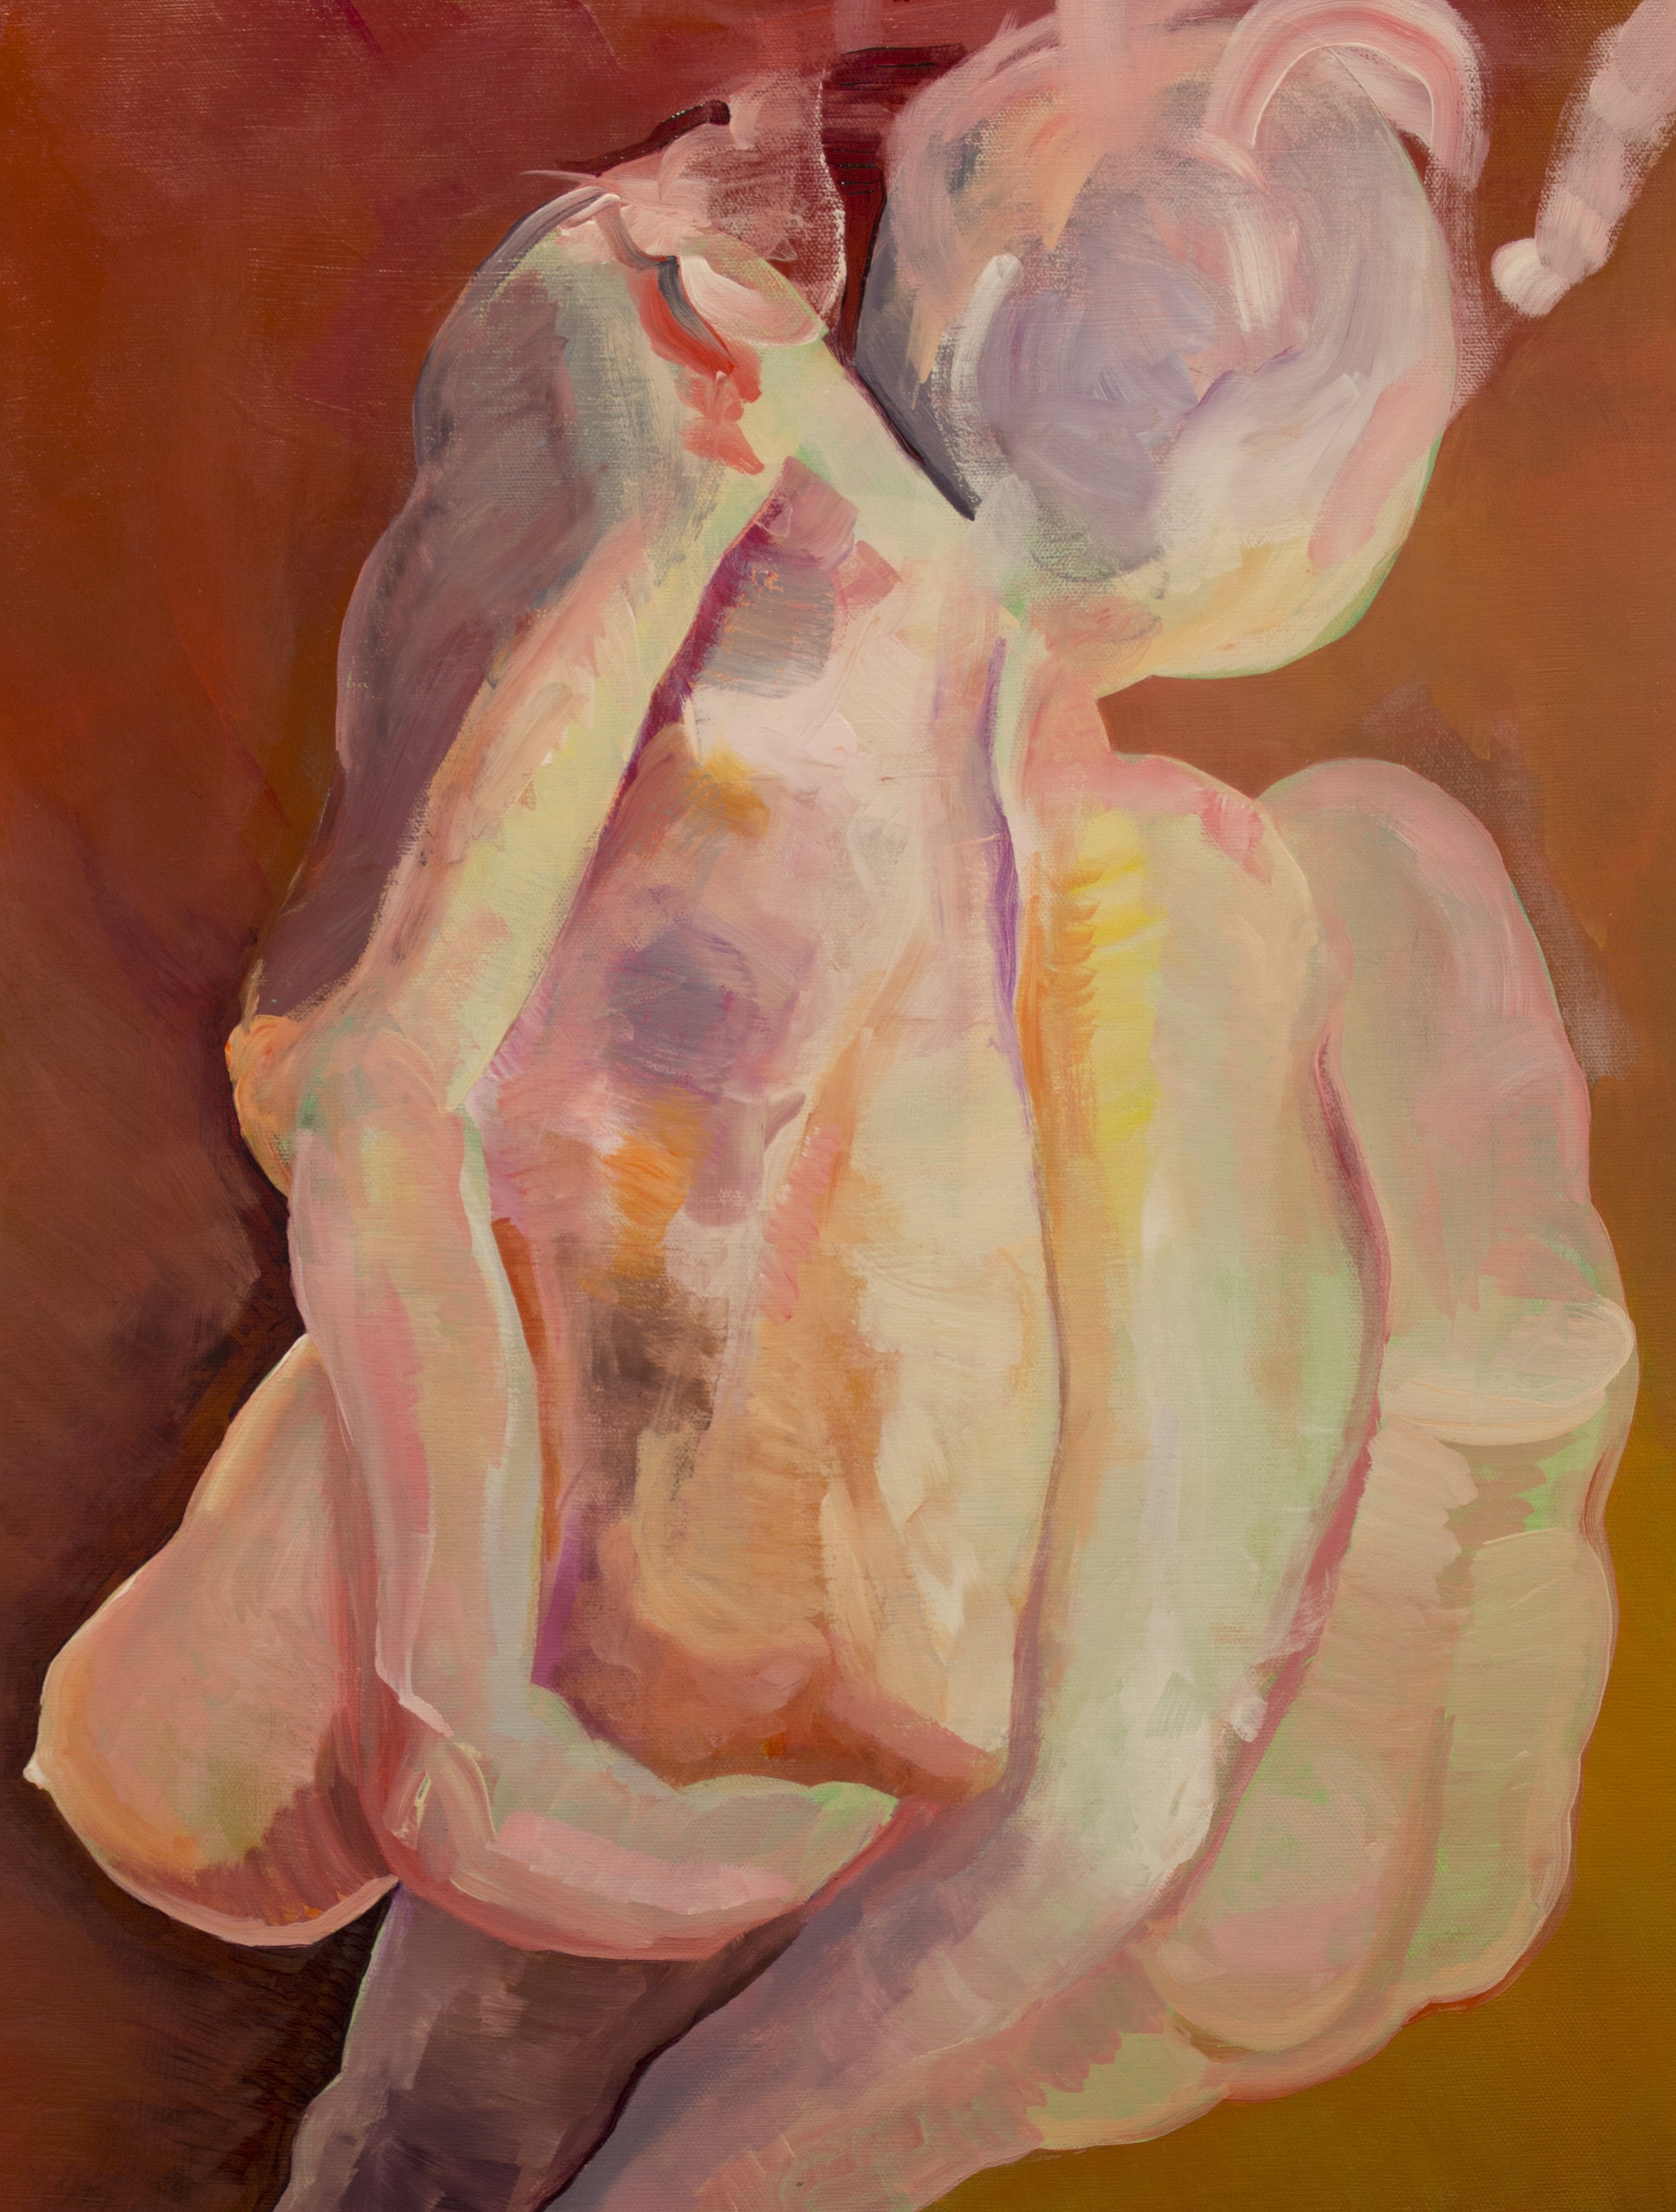   Abject Body,&nbsp; acrylic on canvas, 24" x 18", 2016 